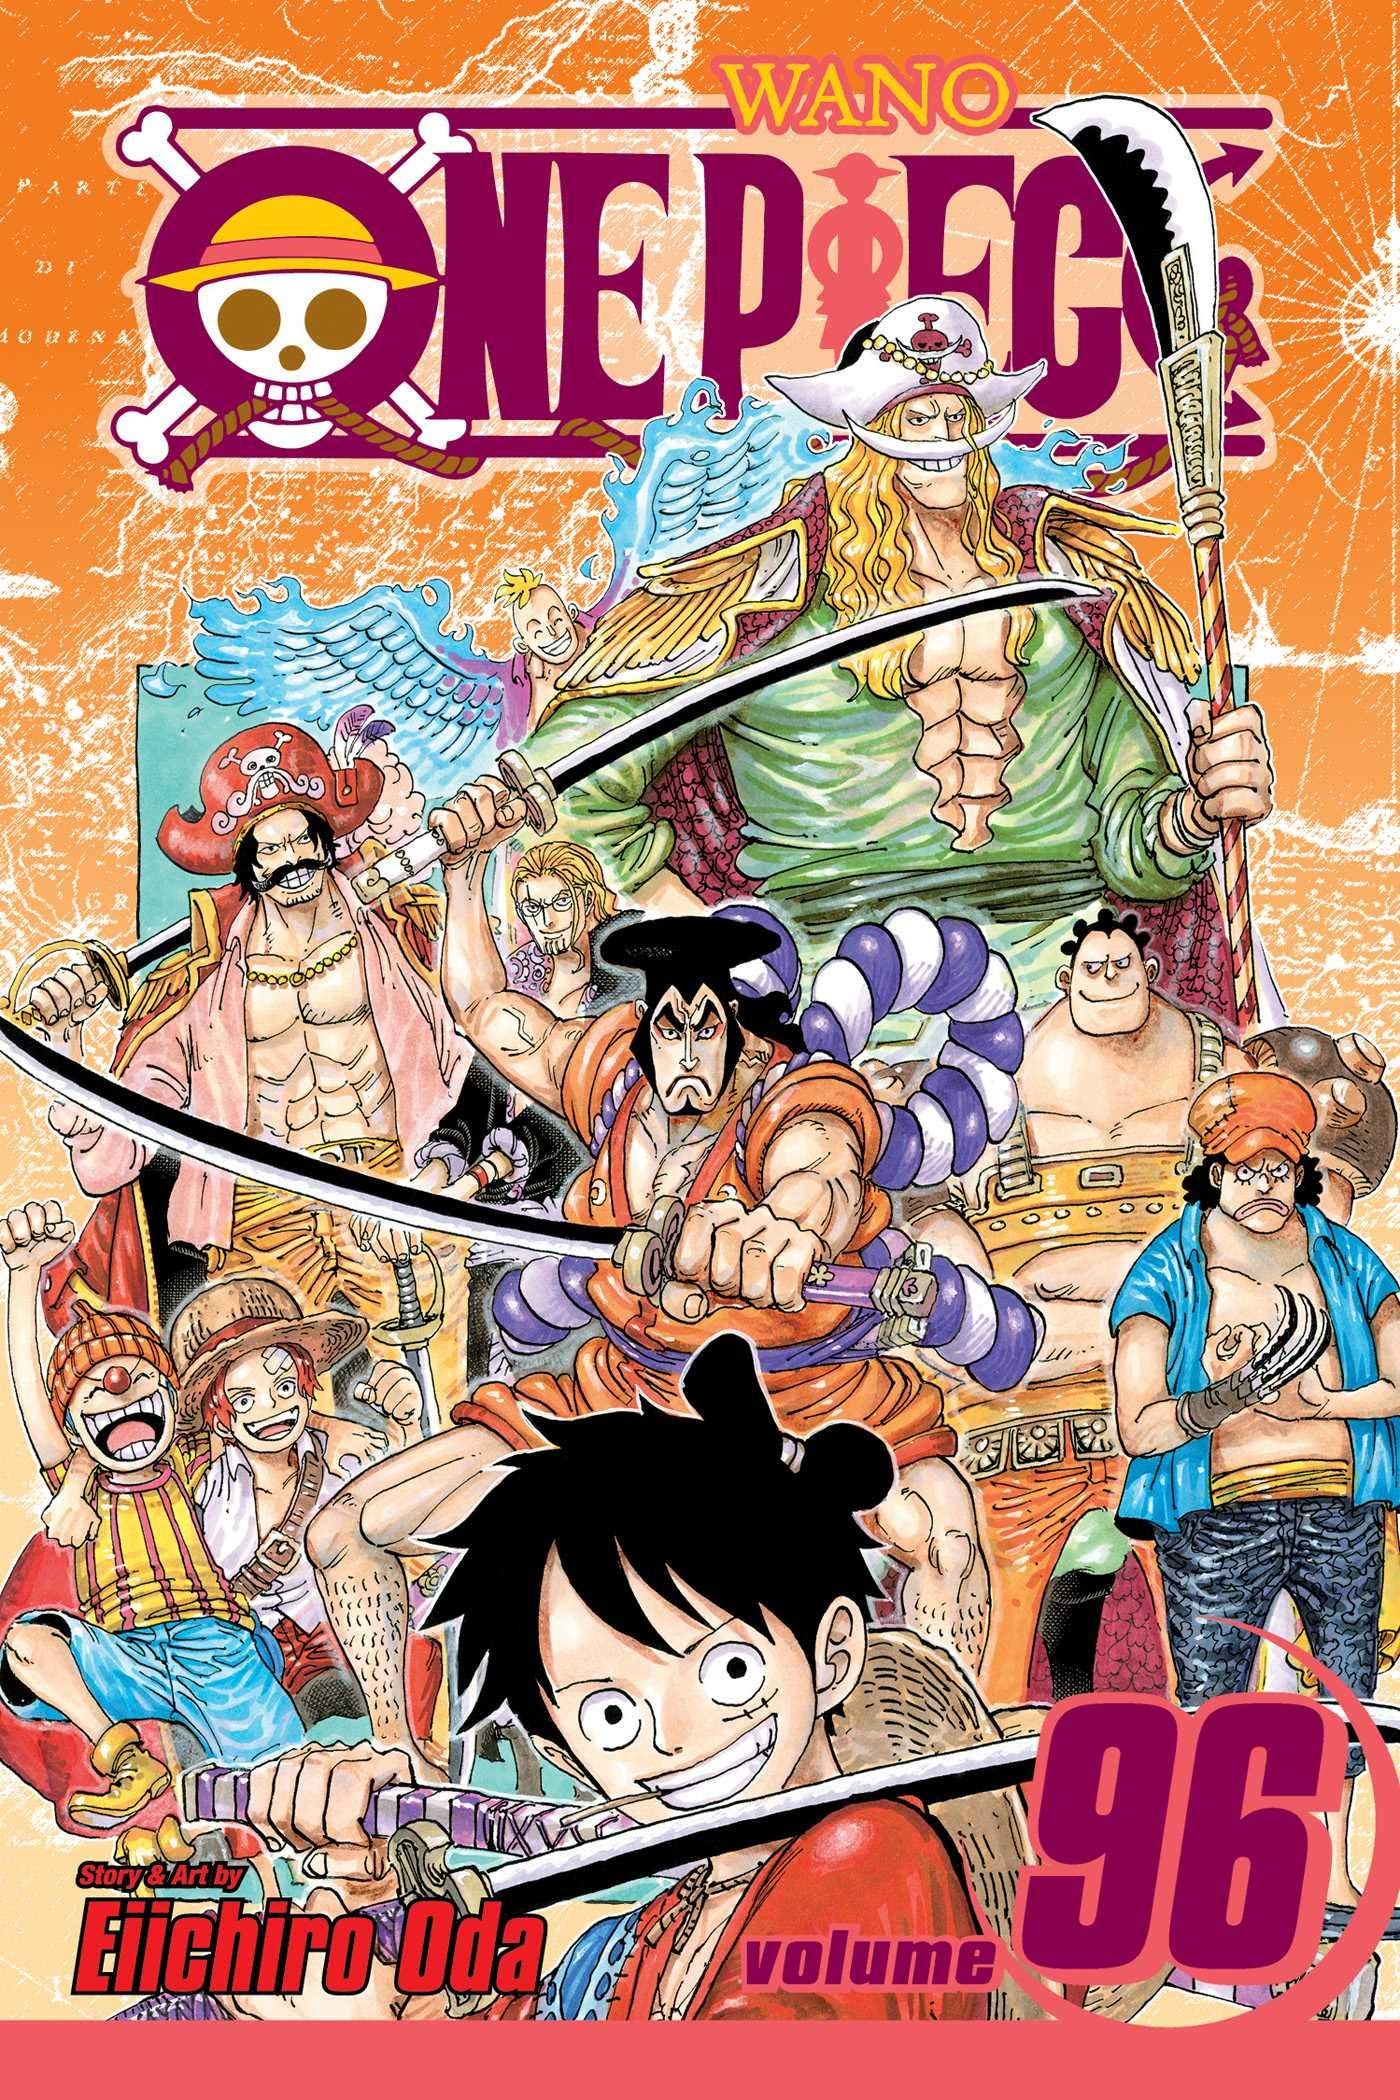 INCREIBLE: El creador de One Piece; Eiichiro Oda, anuncia que esta serie Acabara en  Noviembre de 2021 